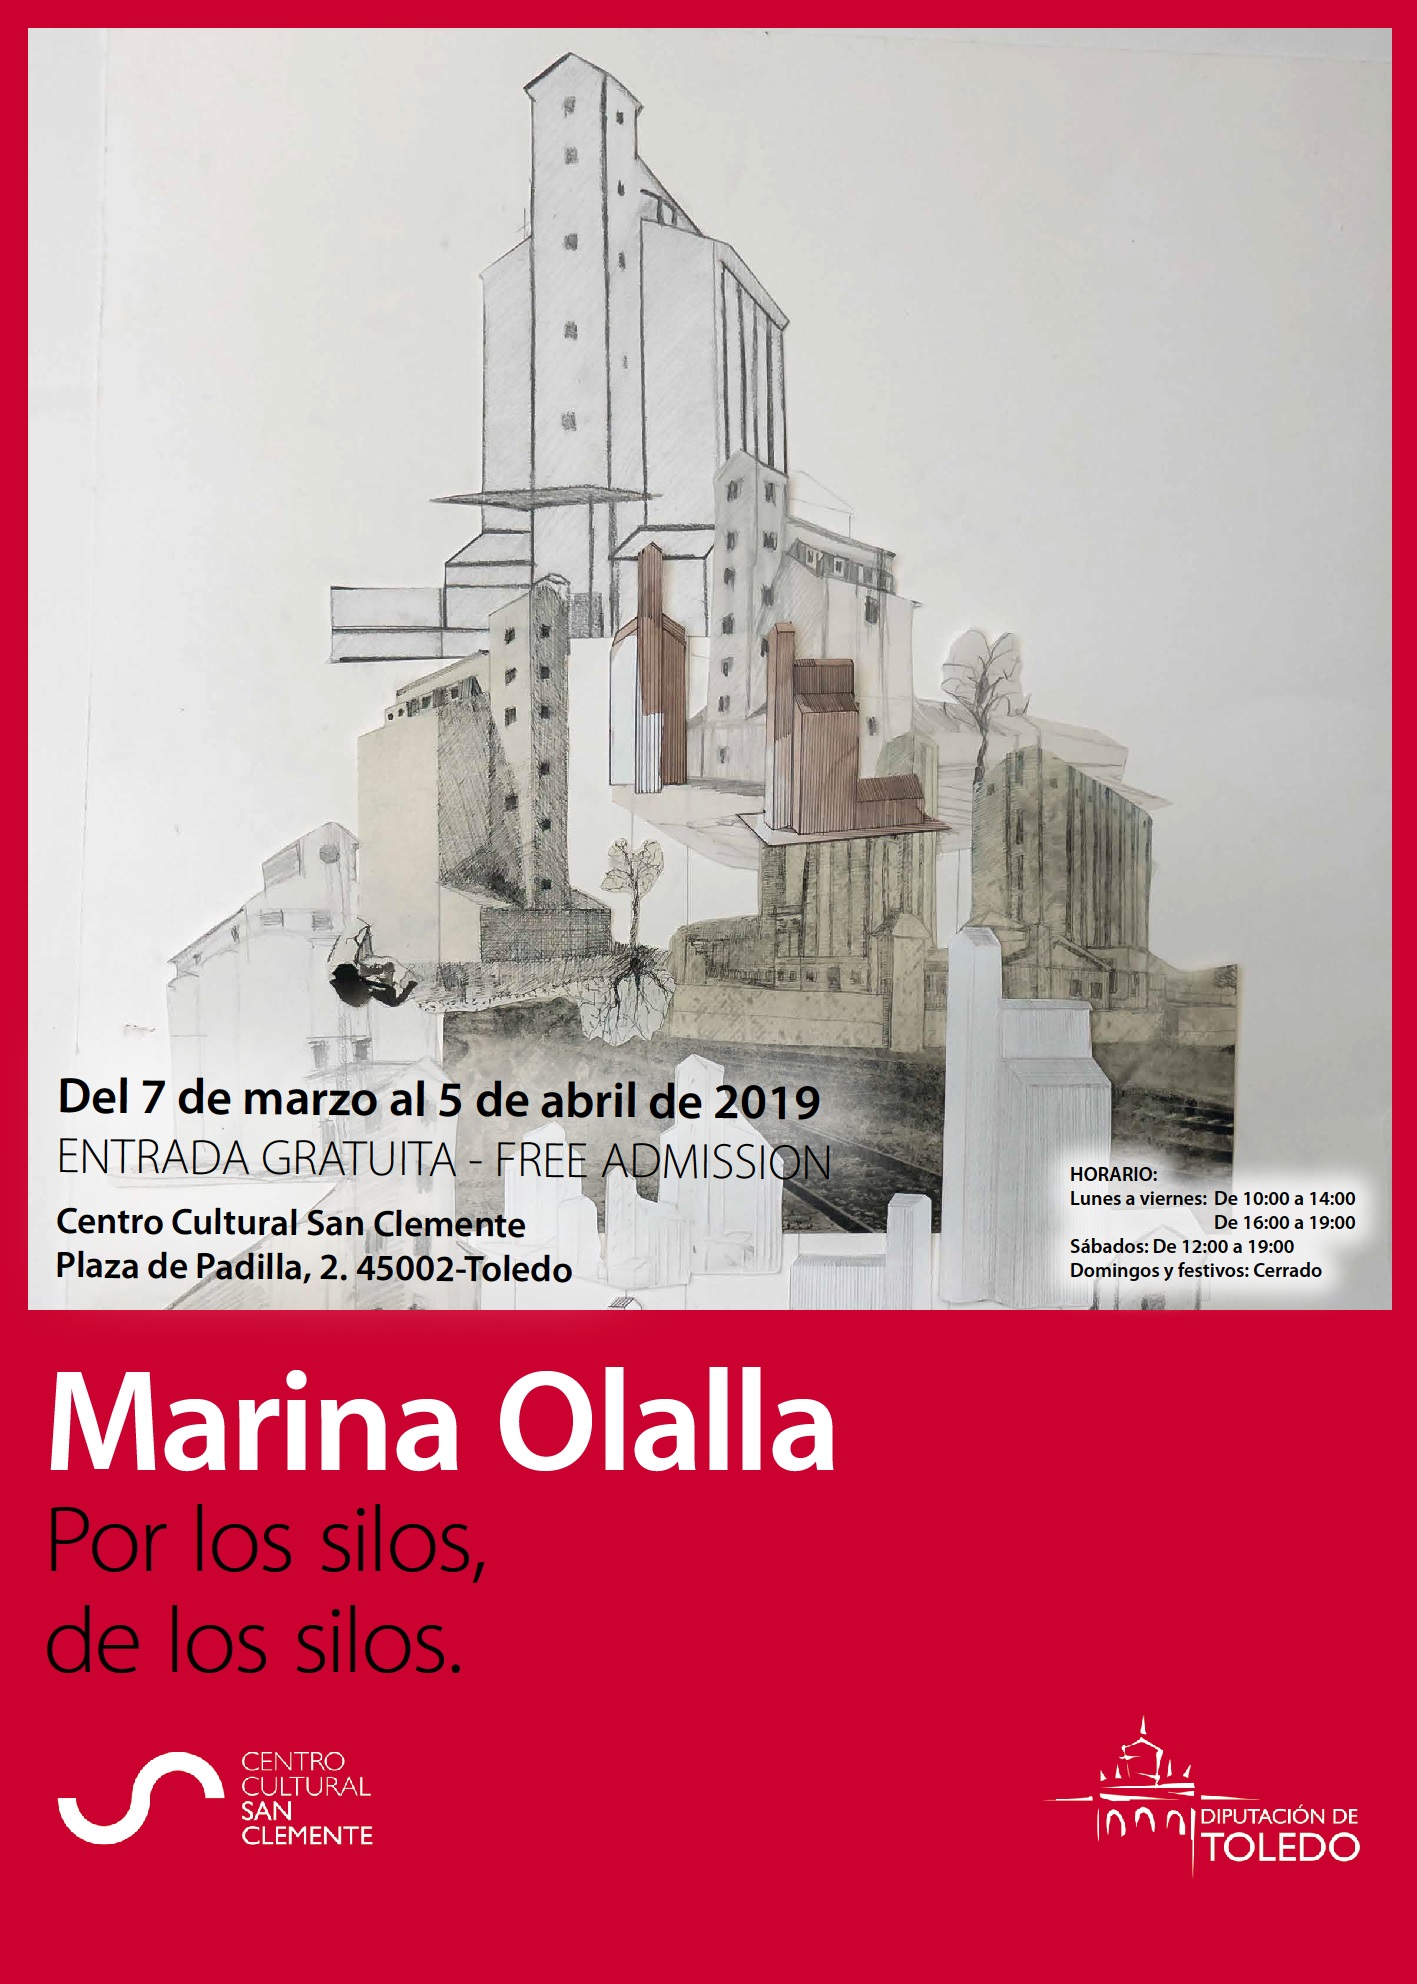 Marina Olalla